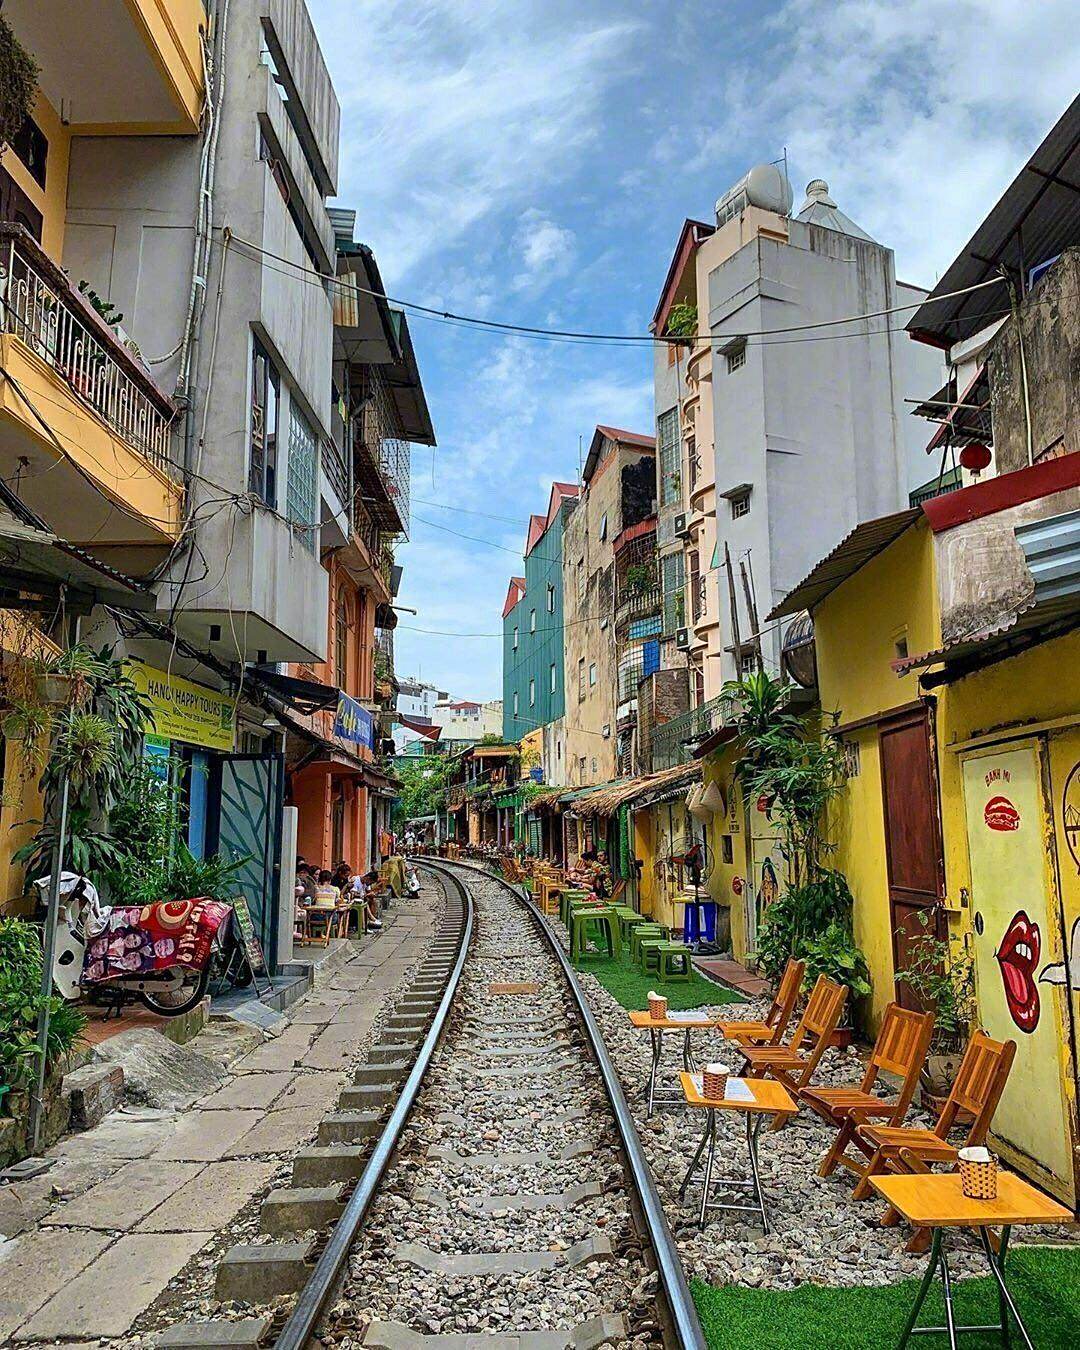 越南河内火车街,火车近距离在居民区穿越而过